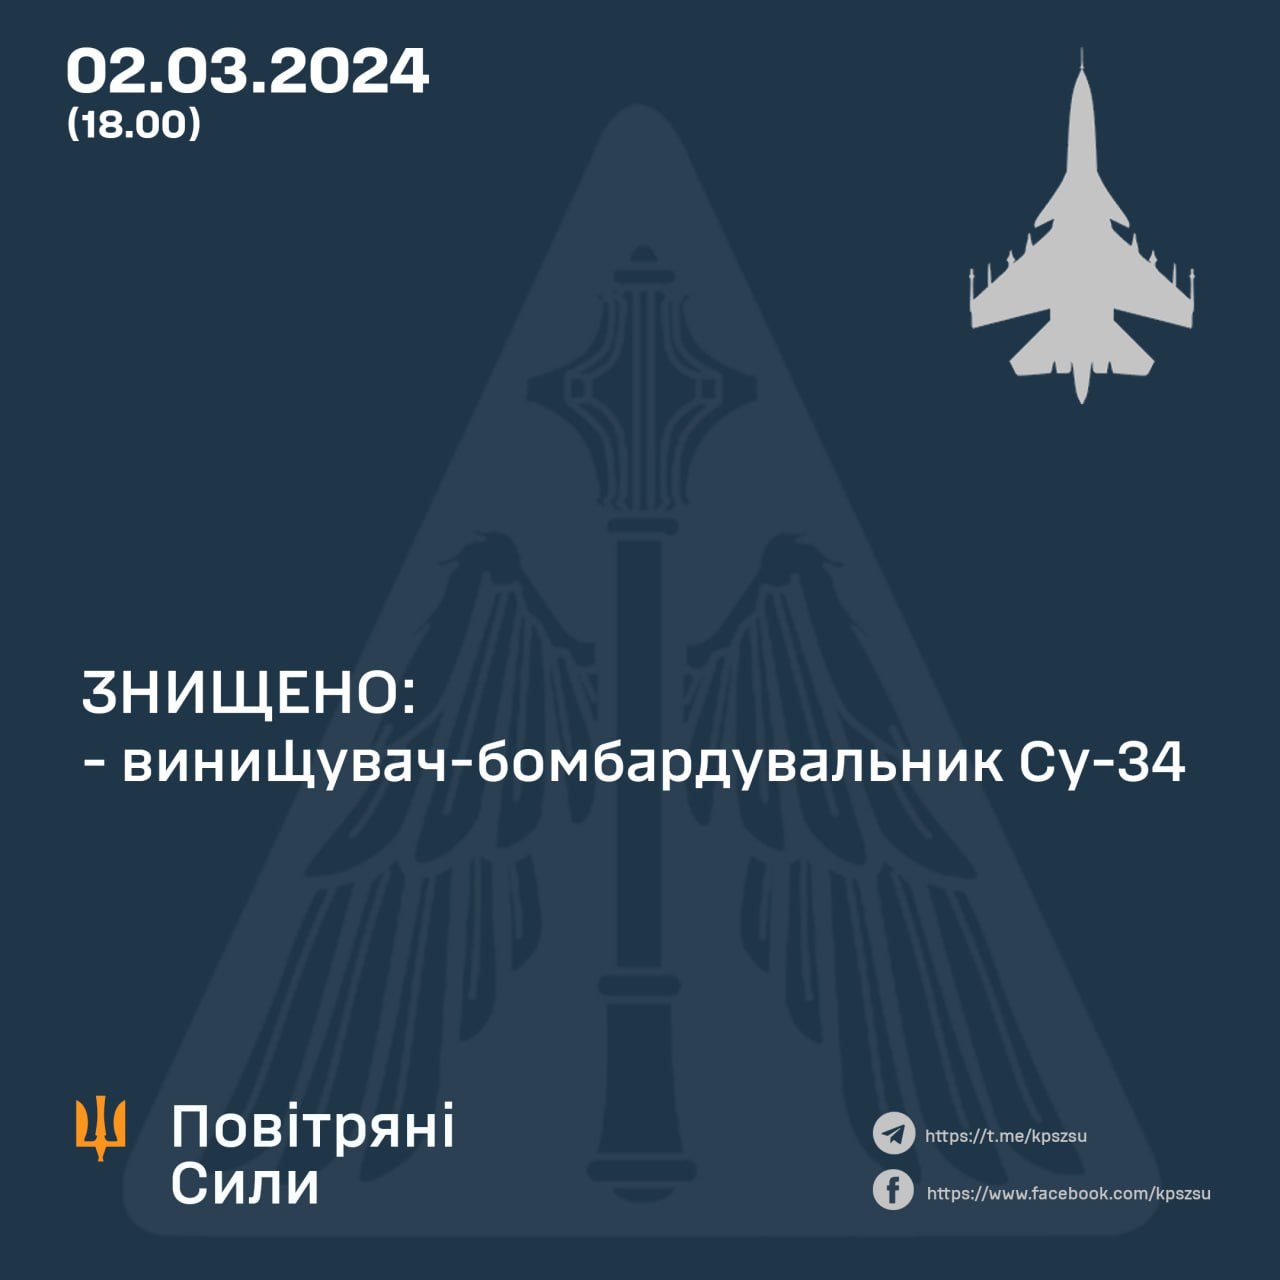 Военные Вооруженных сил Украины уничтожили очередной российский самолет Су-34.